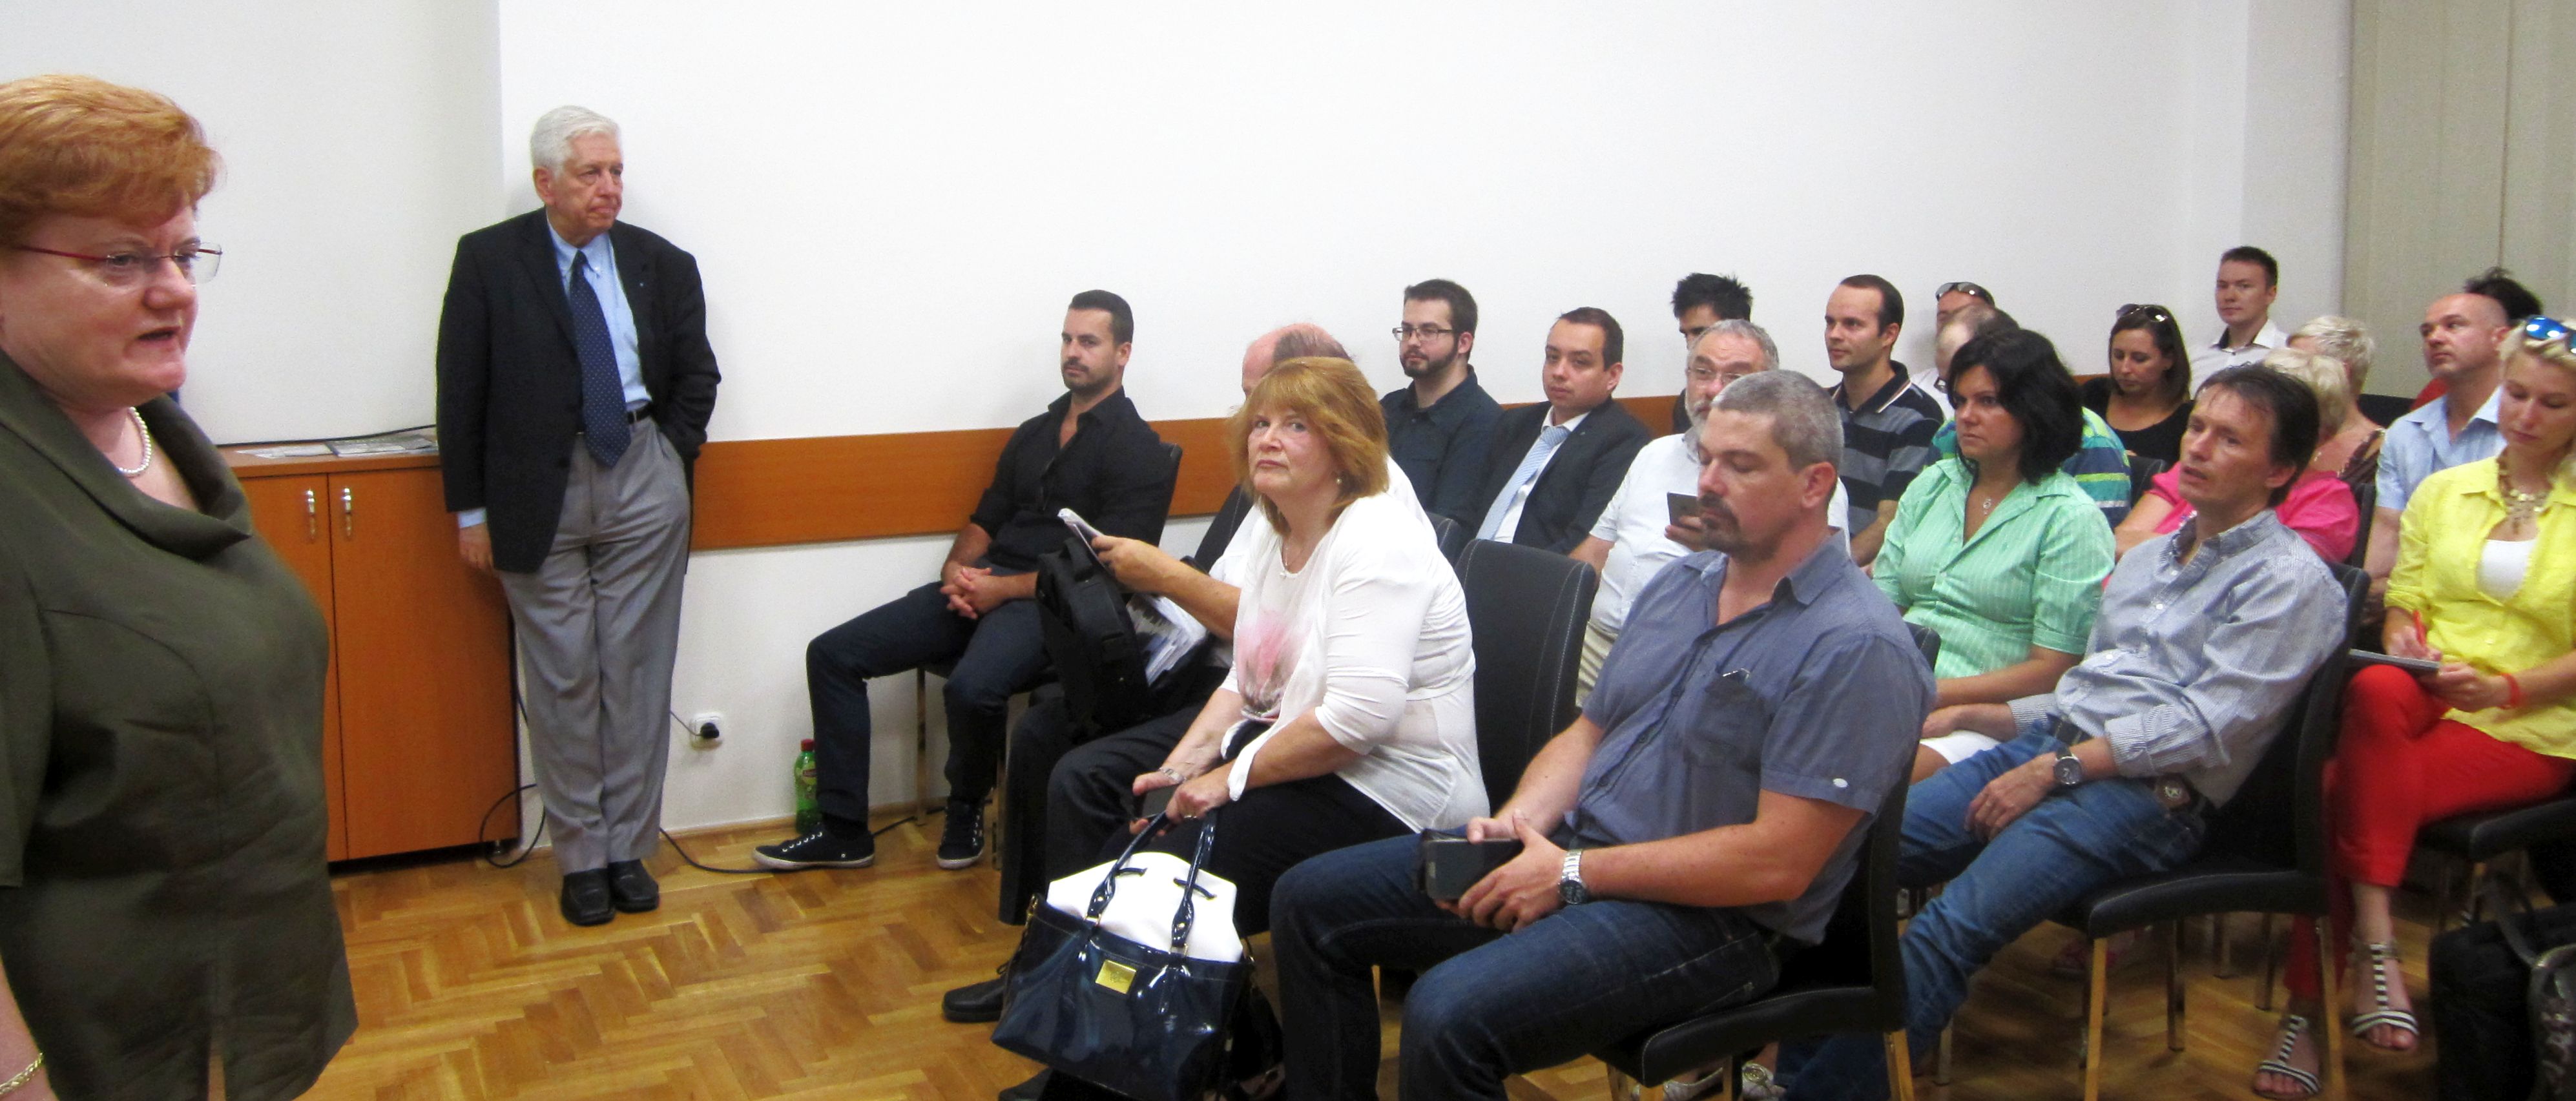 Az AmHunCham NY Budapesten tartózkodó delegációjának három tagja válaszolt több mint hatvan résztvevő kérdéseire a Budapesti Vállalkozásfejlesztési Közalapítvány SMARTPOINT-jában szervezett Workshopon arra a kérdésre, hogy "Eljuthatnak magyar vállalkozások az USA-ba?"